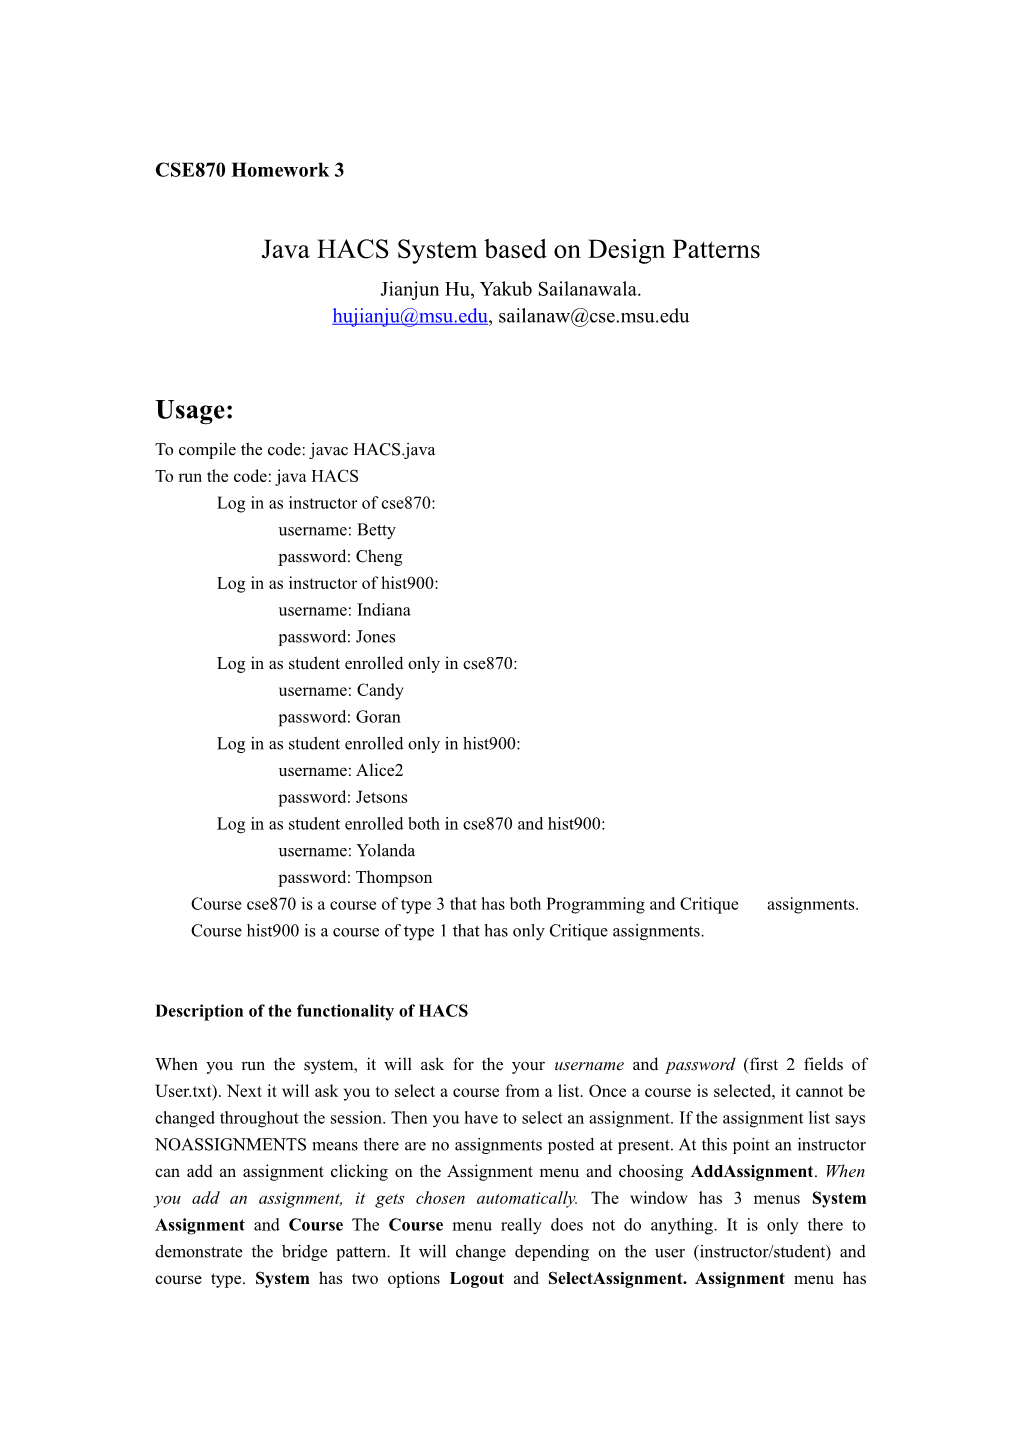 Java HACS System Based on Design Patterns